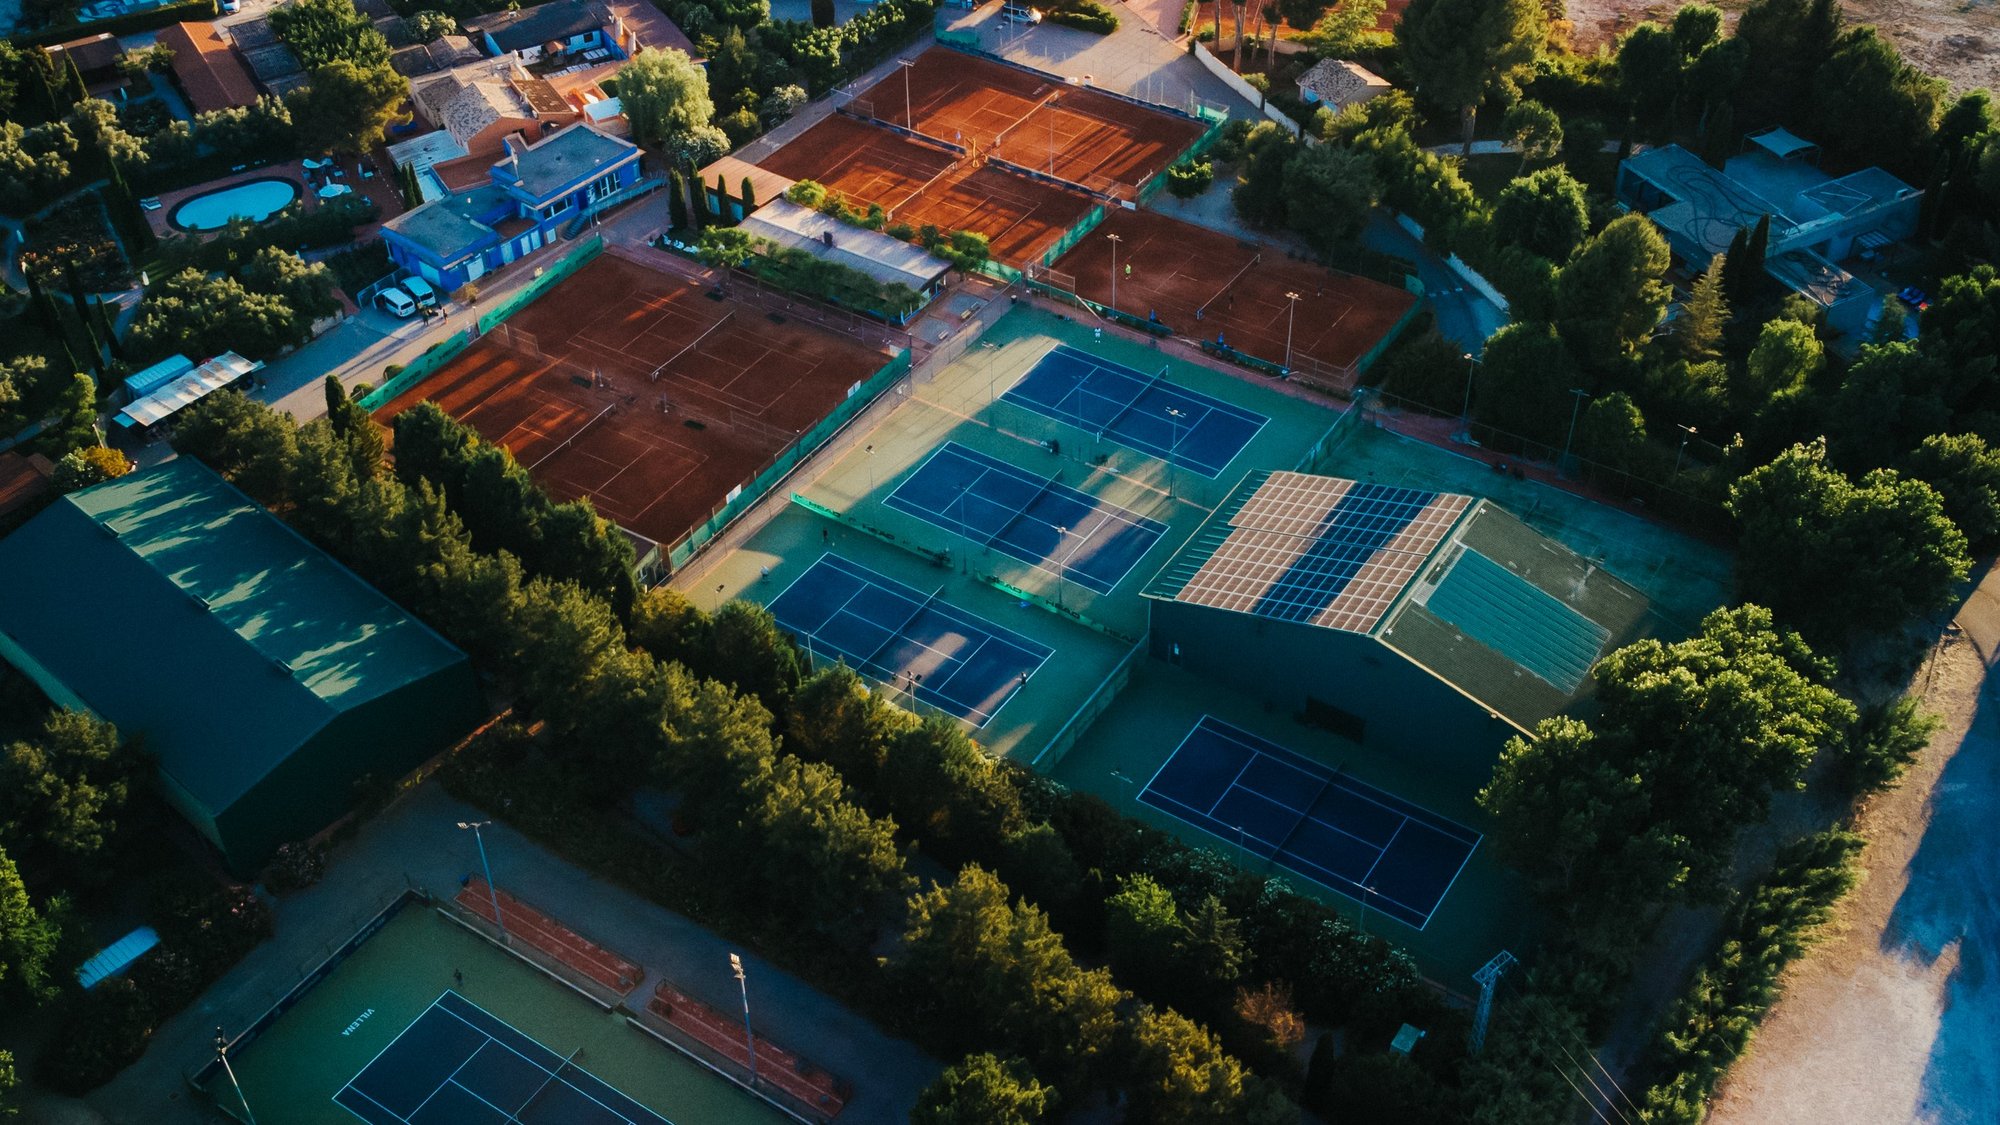 Tennis courts Juan Carlos Ferrero Academy